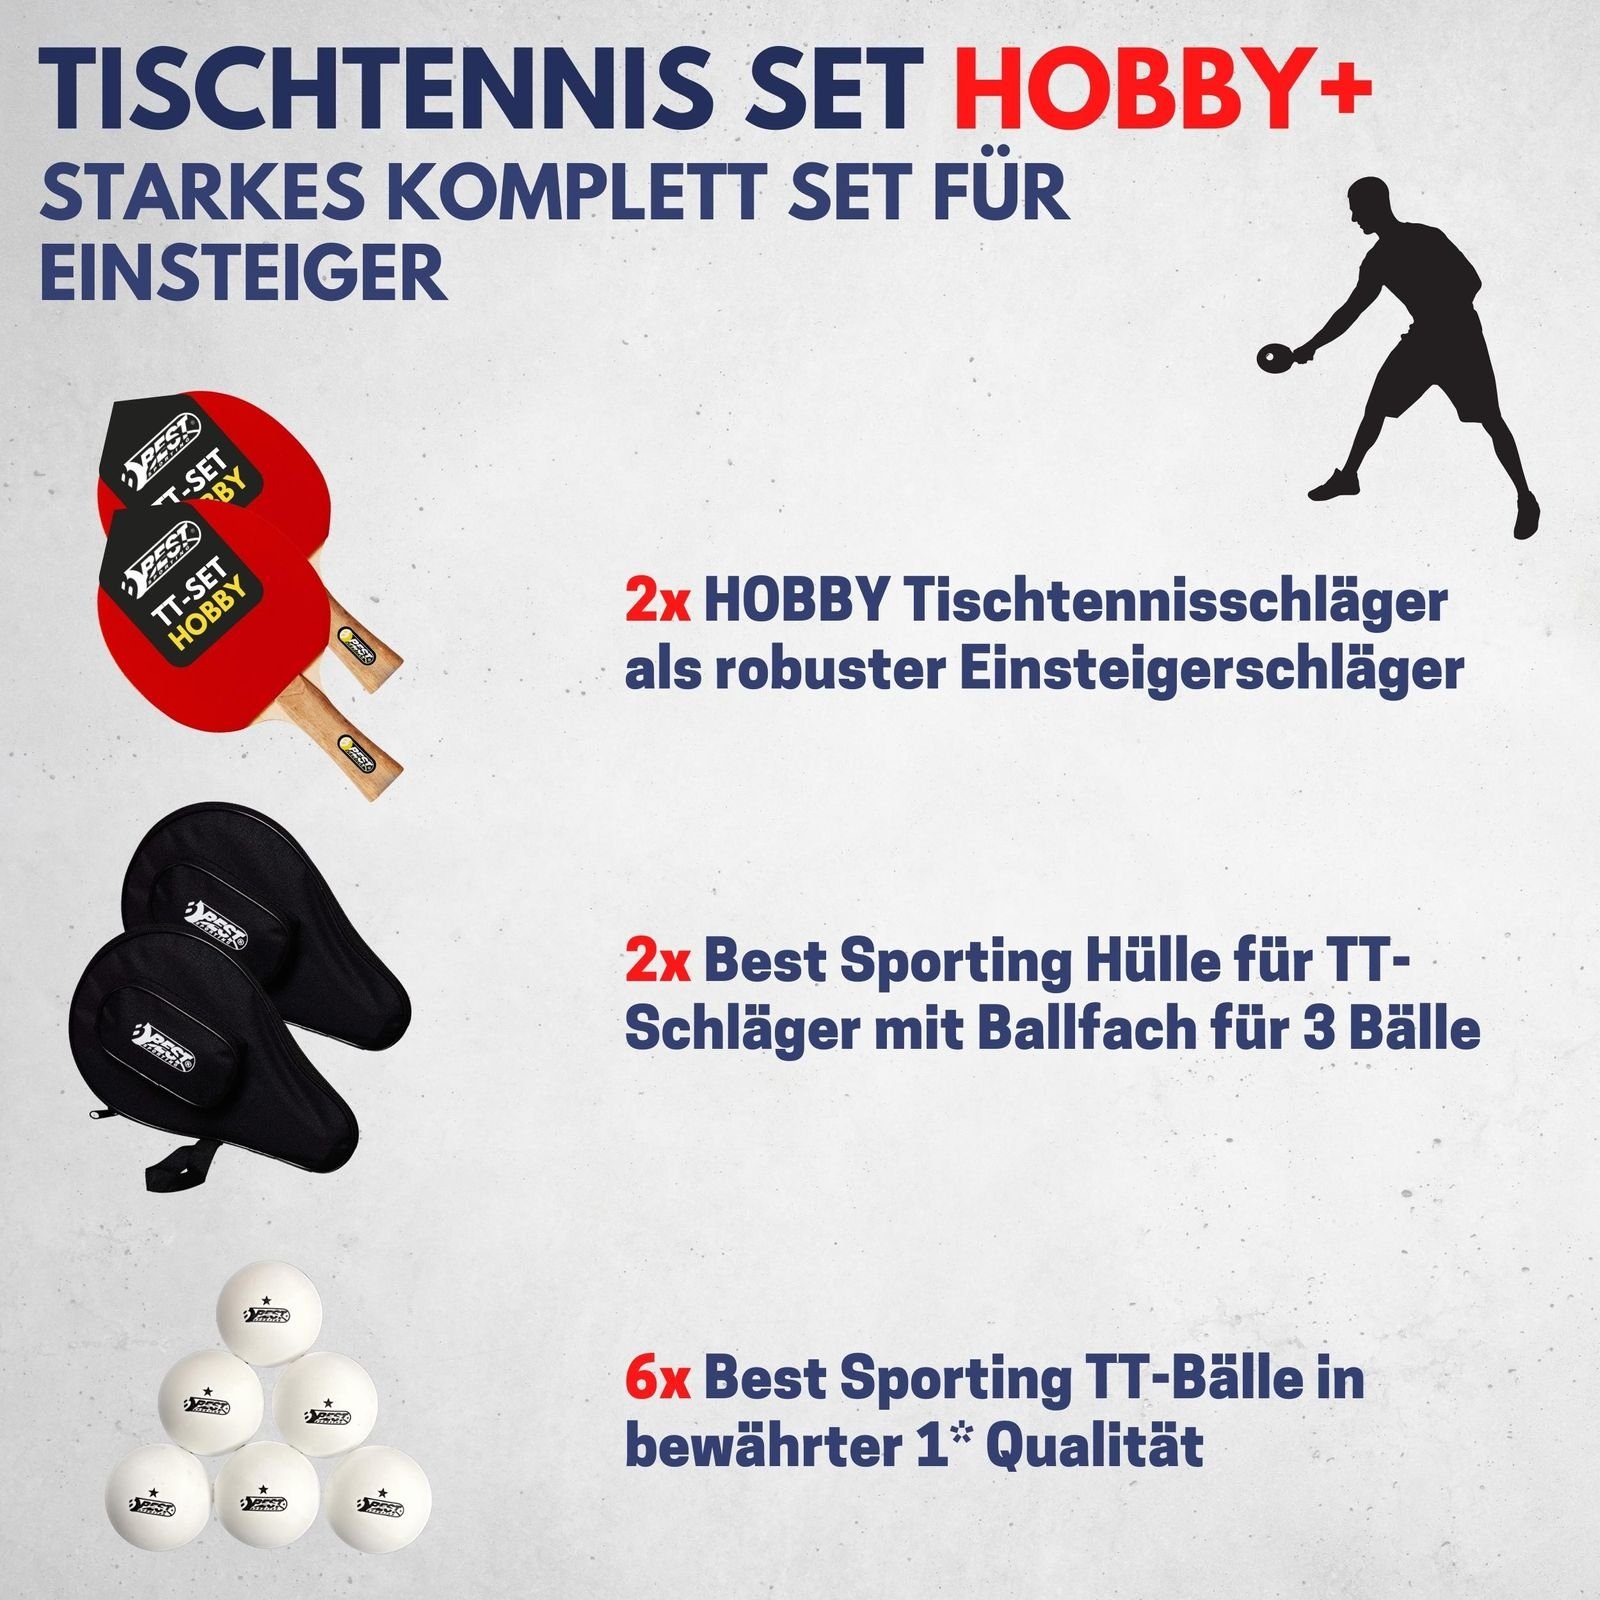 Best Sporting Tischtennisschläger Tischtennissets Tischtennis Racket) (5-teiliges Table Set Taschen wertiges HOBBY Schläger, Set und I - 2 1* Tischtennisbälle 2 I Tennis